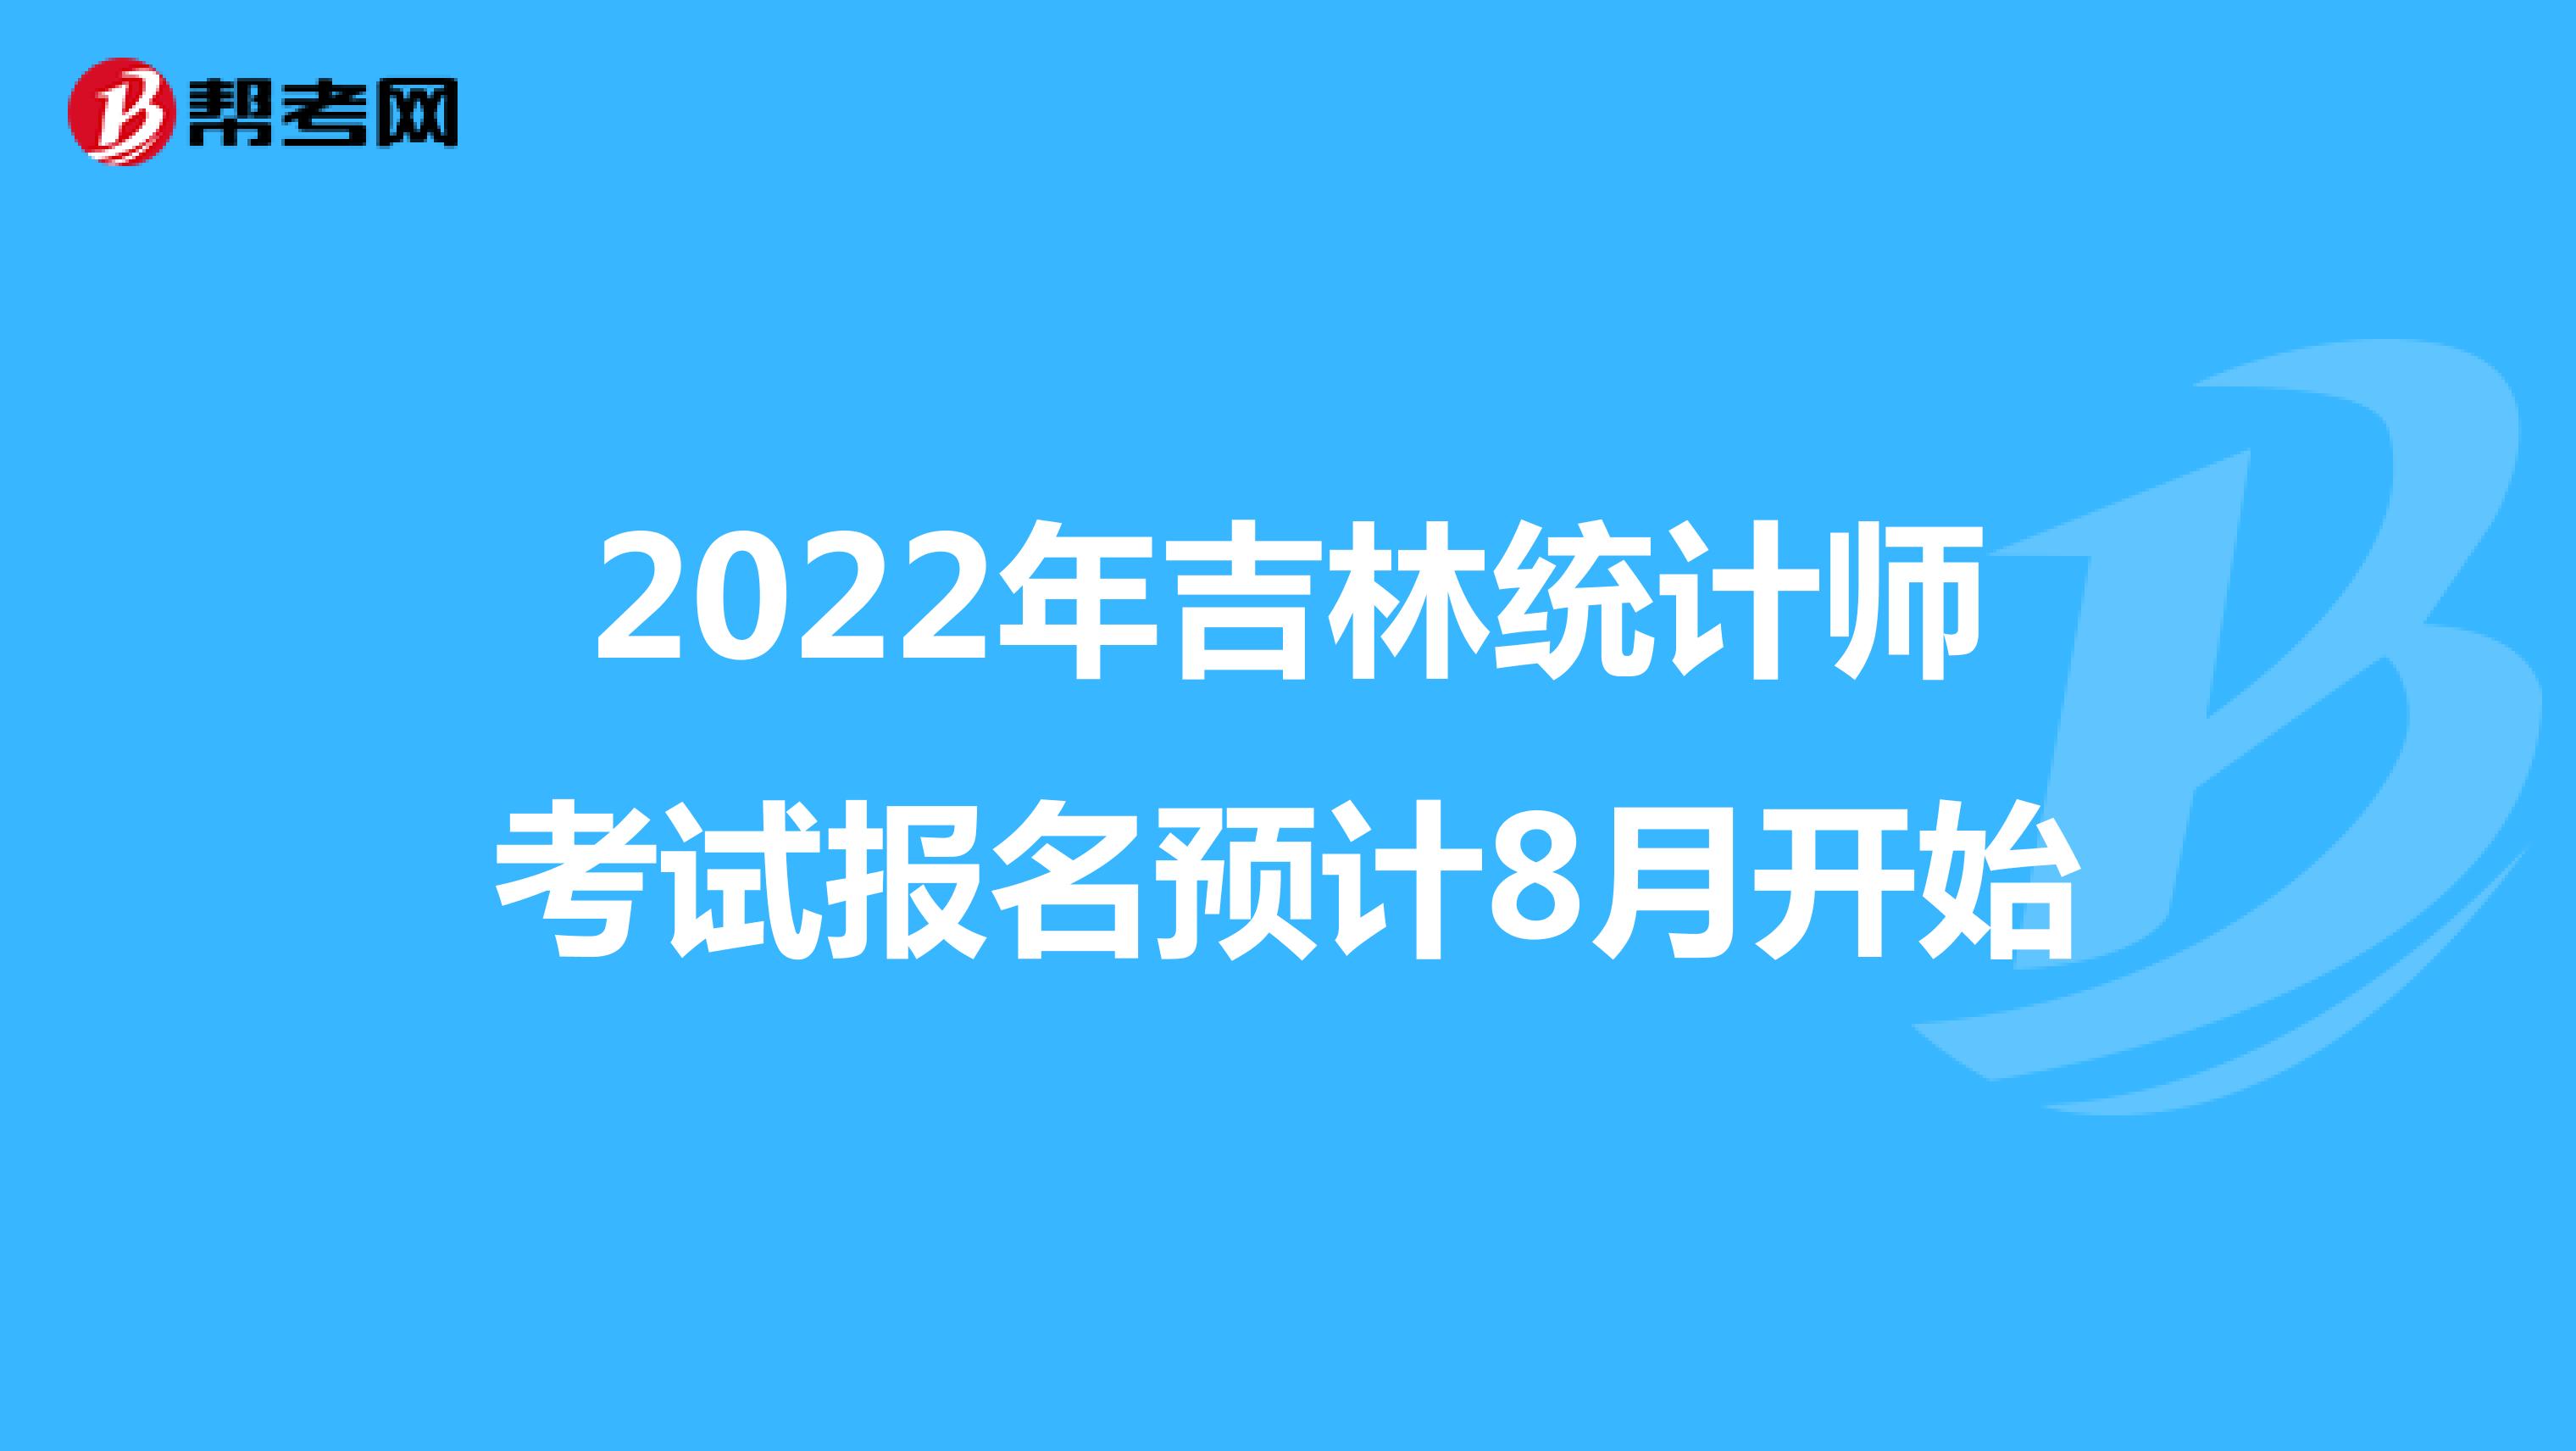 2022年吉林统计师考试报名预计8月开始